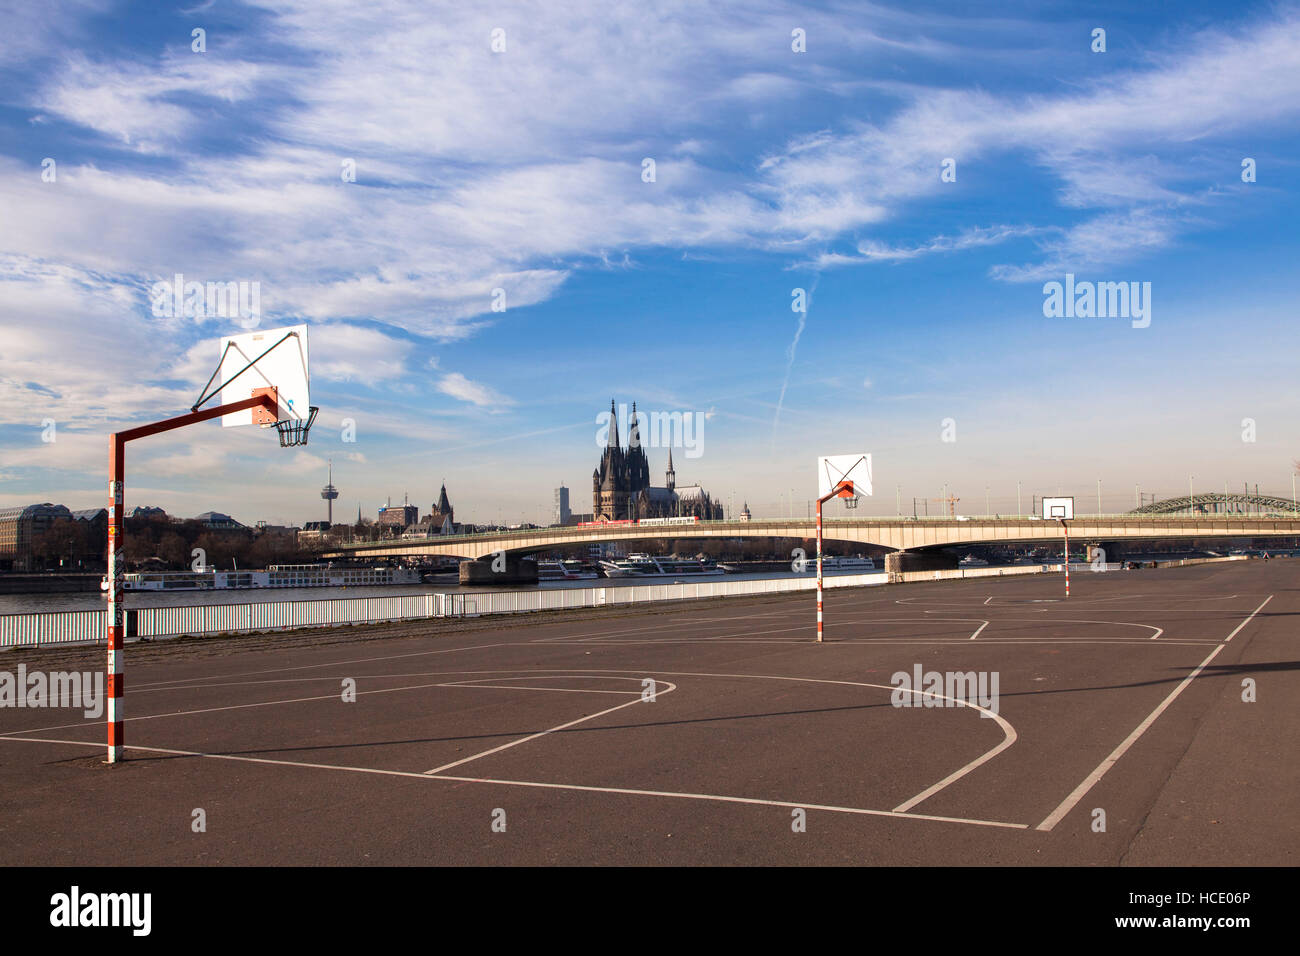 Germania, Colonia, un campo da basket nel quartiere Deutz, vista del centro storico della città. Foto Stock